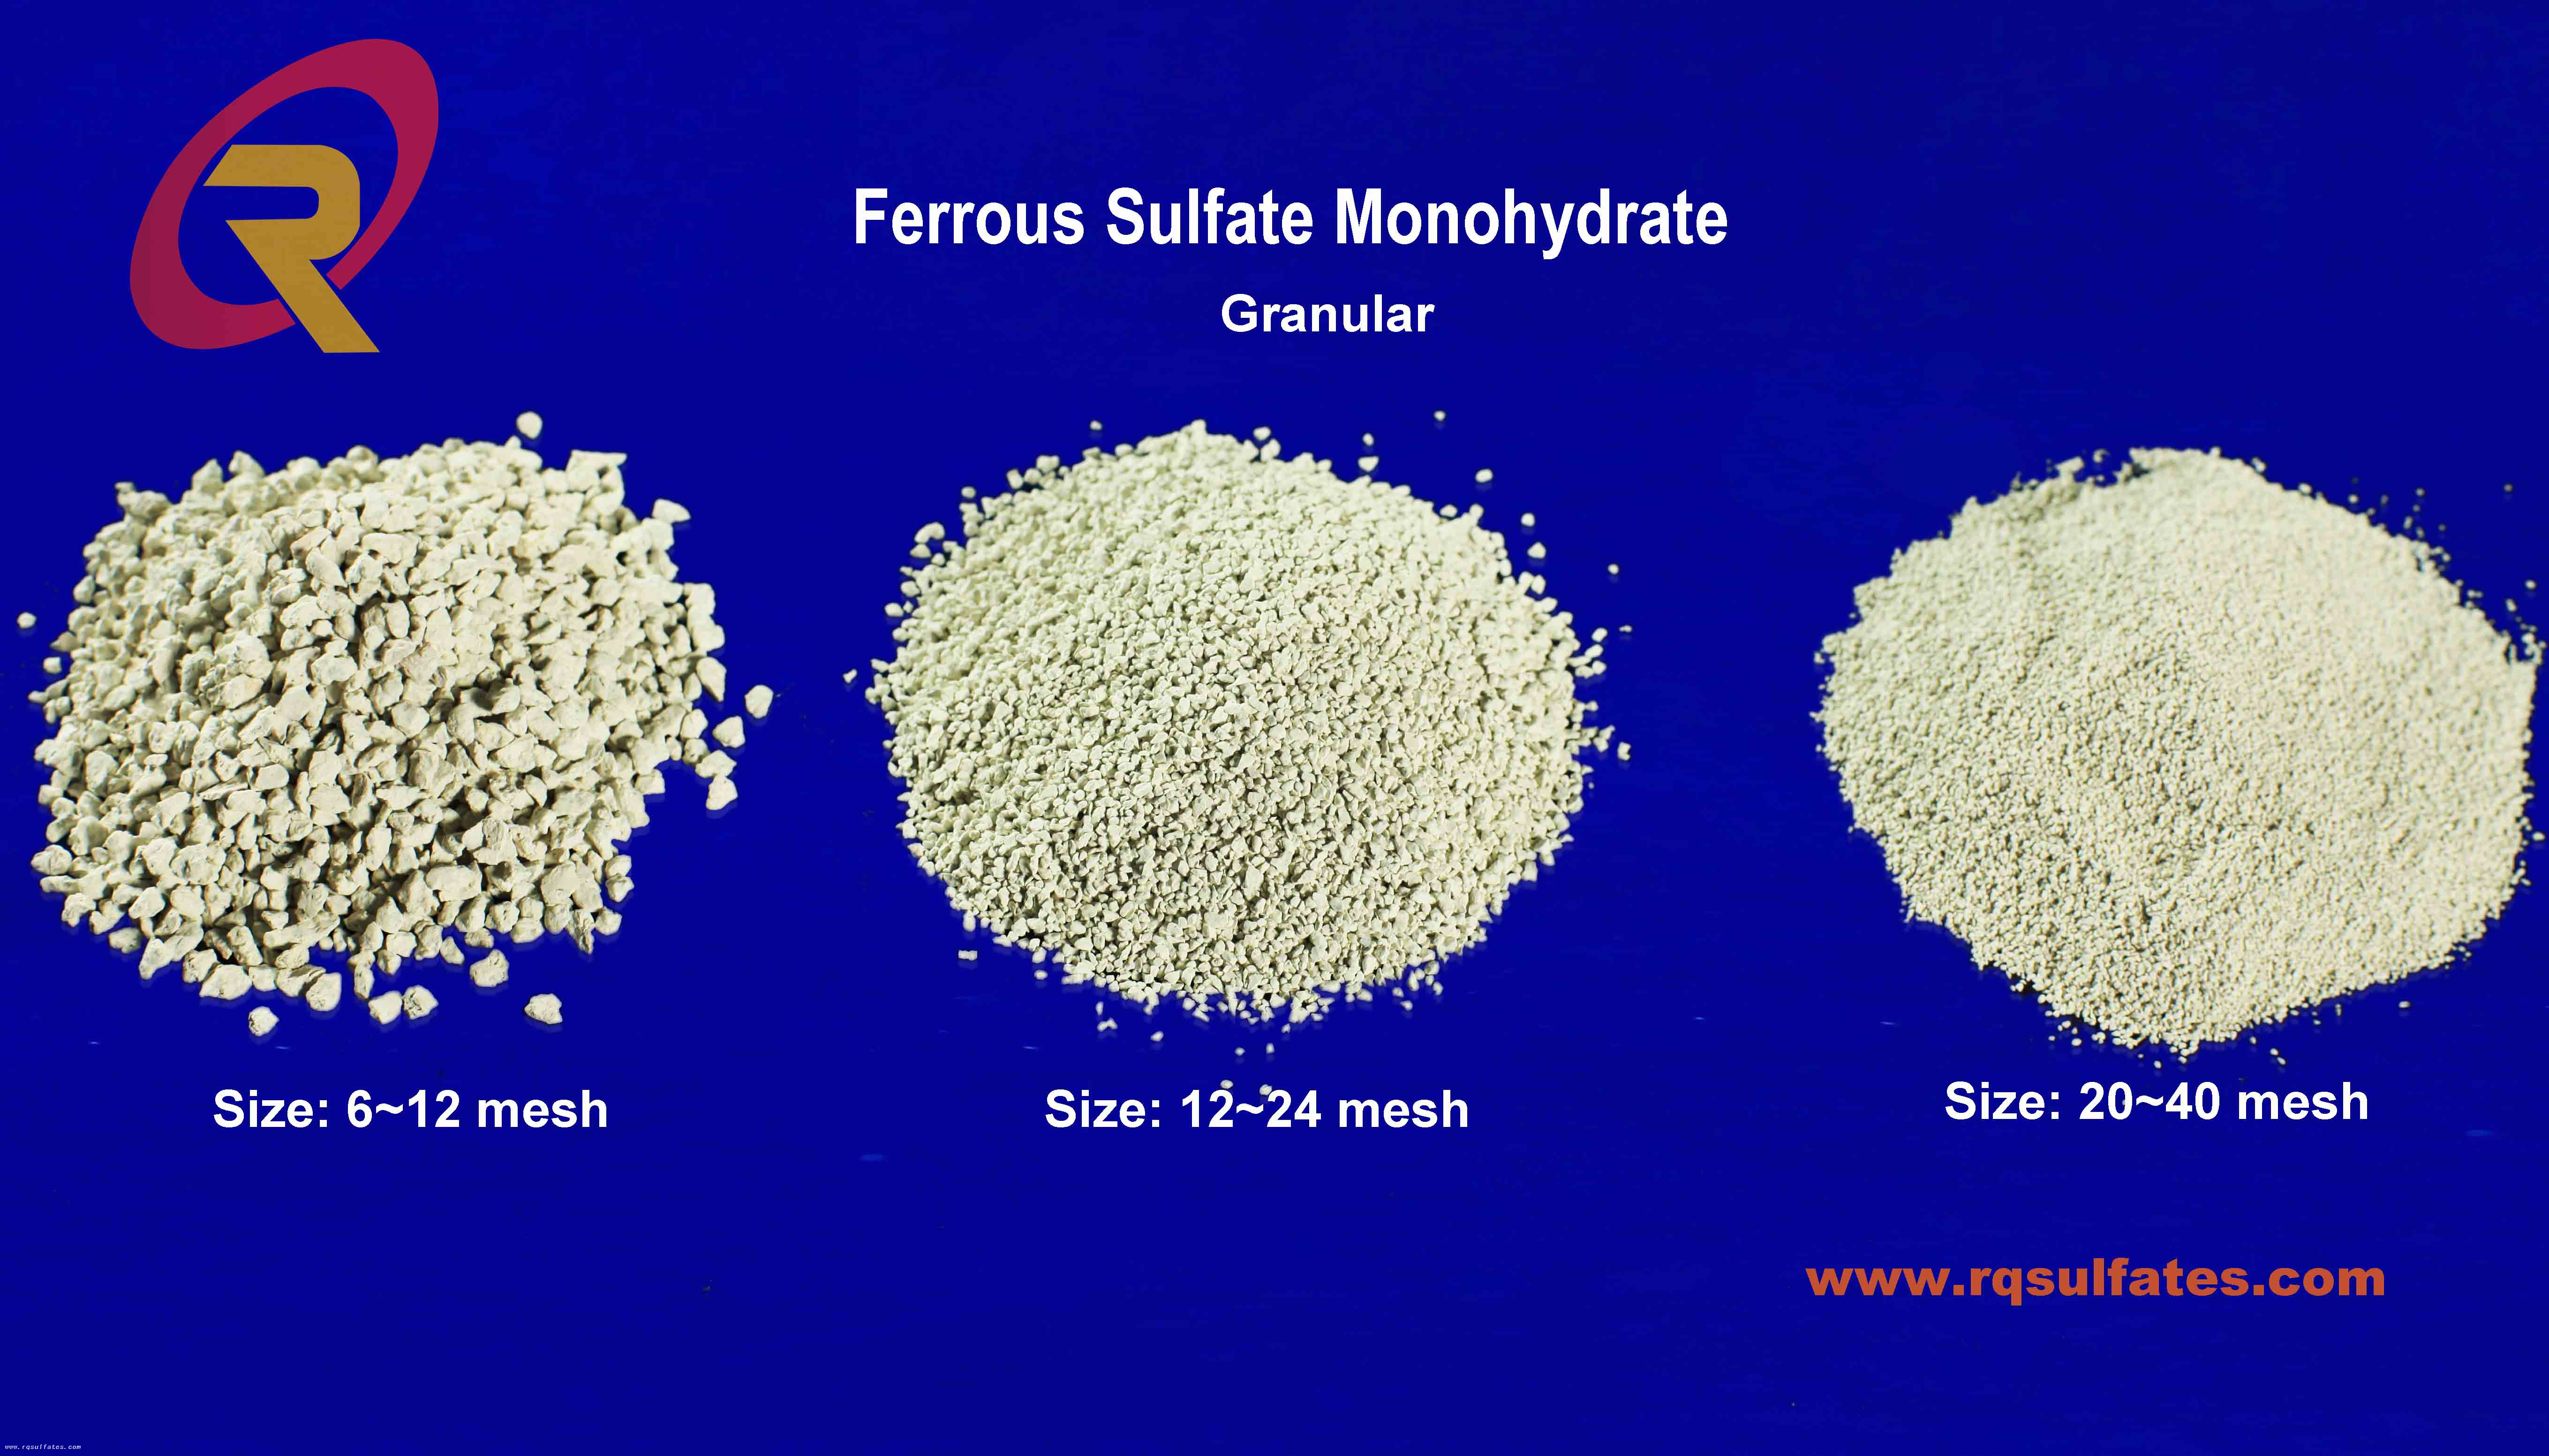 Сетка моногидрата сульфата железа 12-24 промышленного класса гранулированная